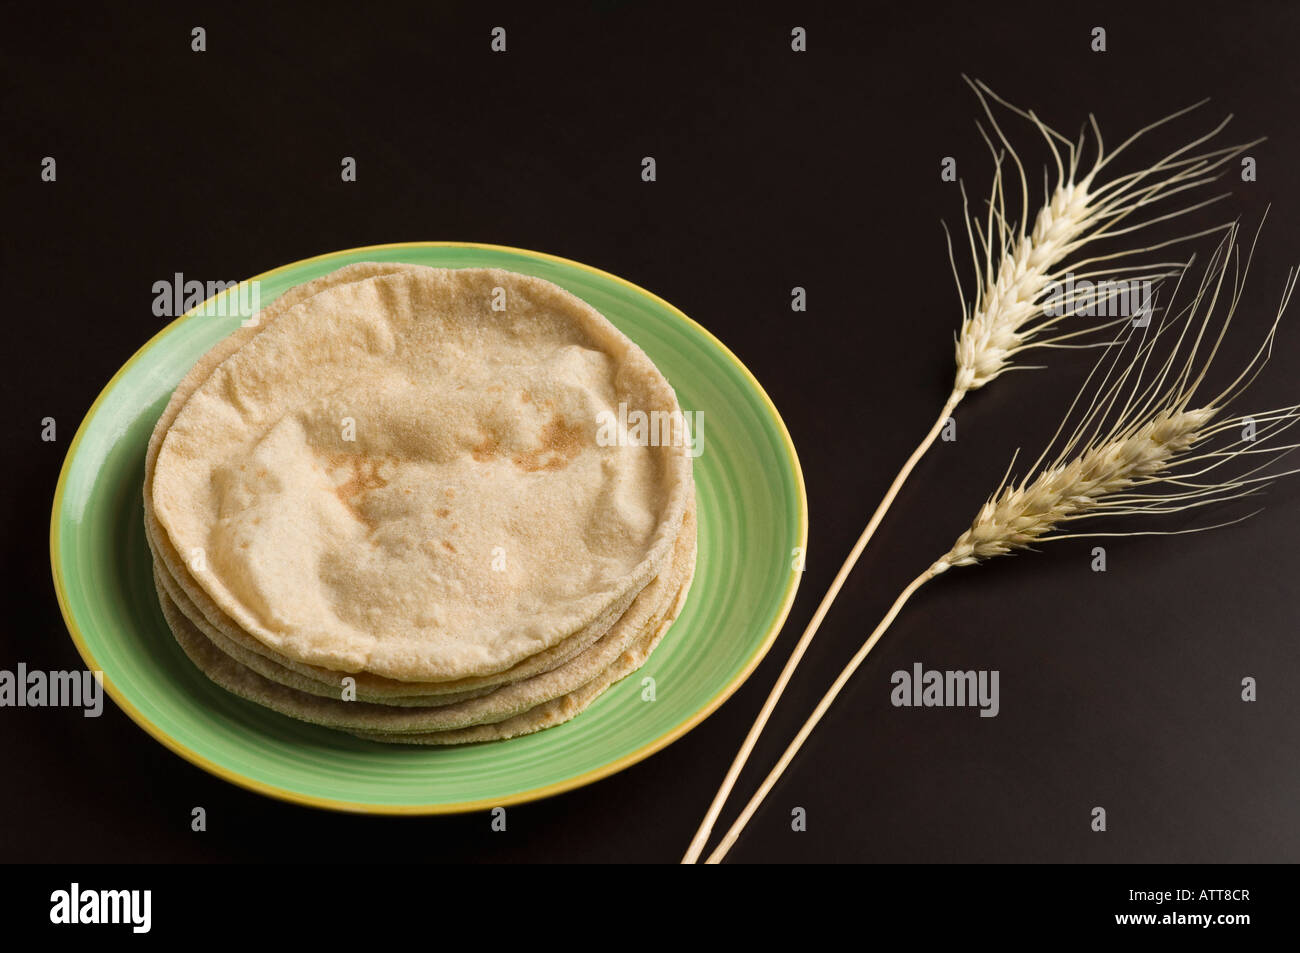 Close-up de chapattis dans une plaque avec des cosses de blé Photo